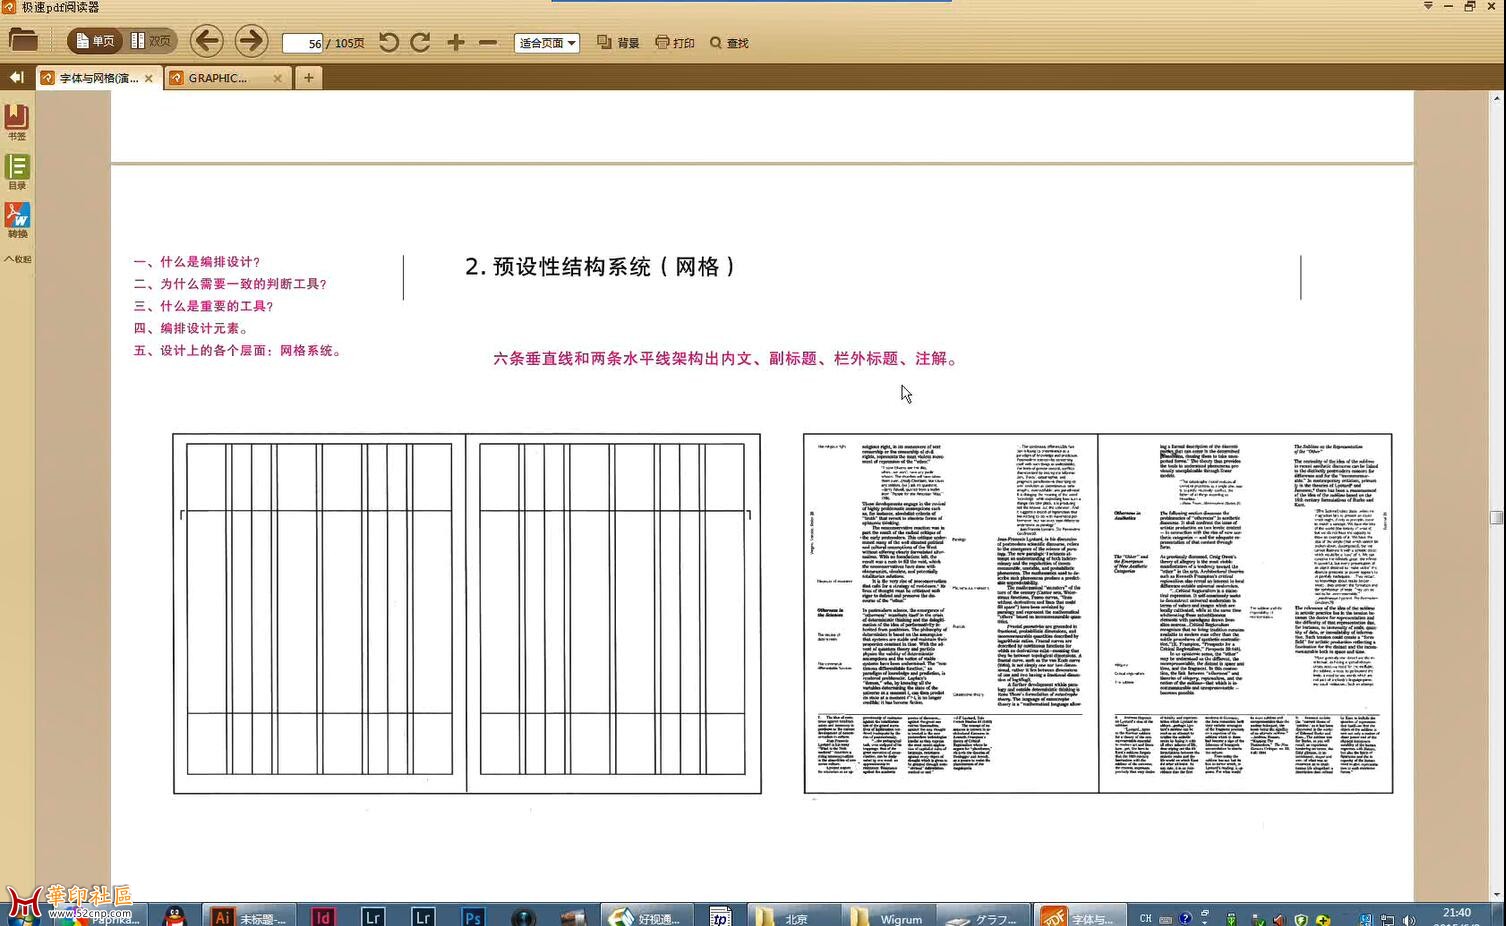 刘痕国际版式设计教程 国际平面版式设计高清无密视频教程(含素材){tag}(5)